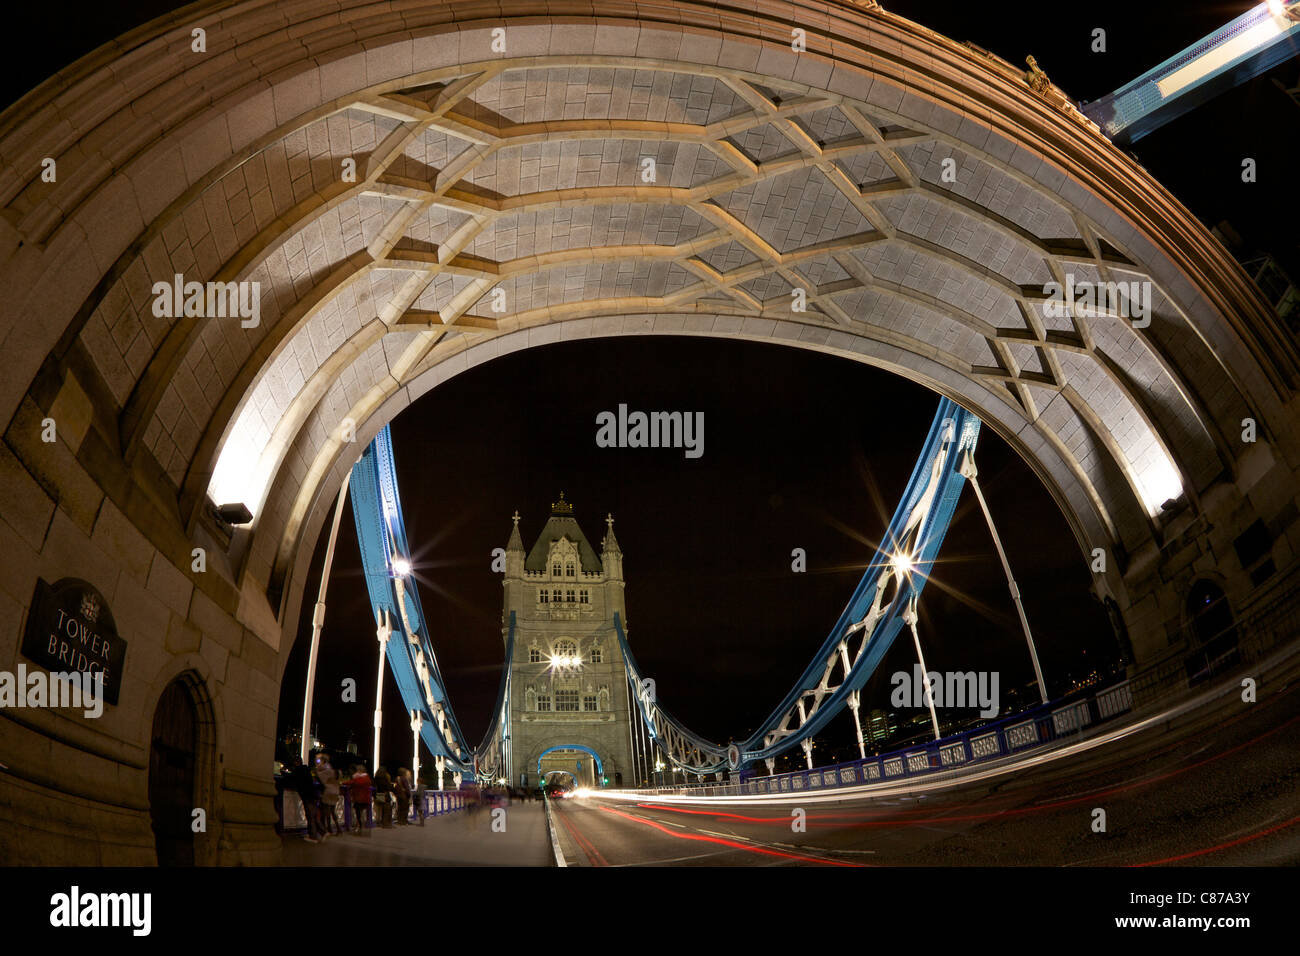 Tower Bridge beleuchtet in der Nacht, City of London, England, UK, Vereinigtes Königreich, GB, Großbritannien, britische Inseln, Europa Stockfoto